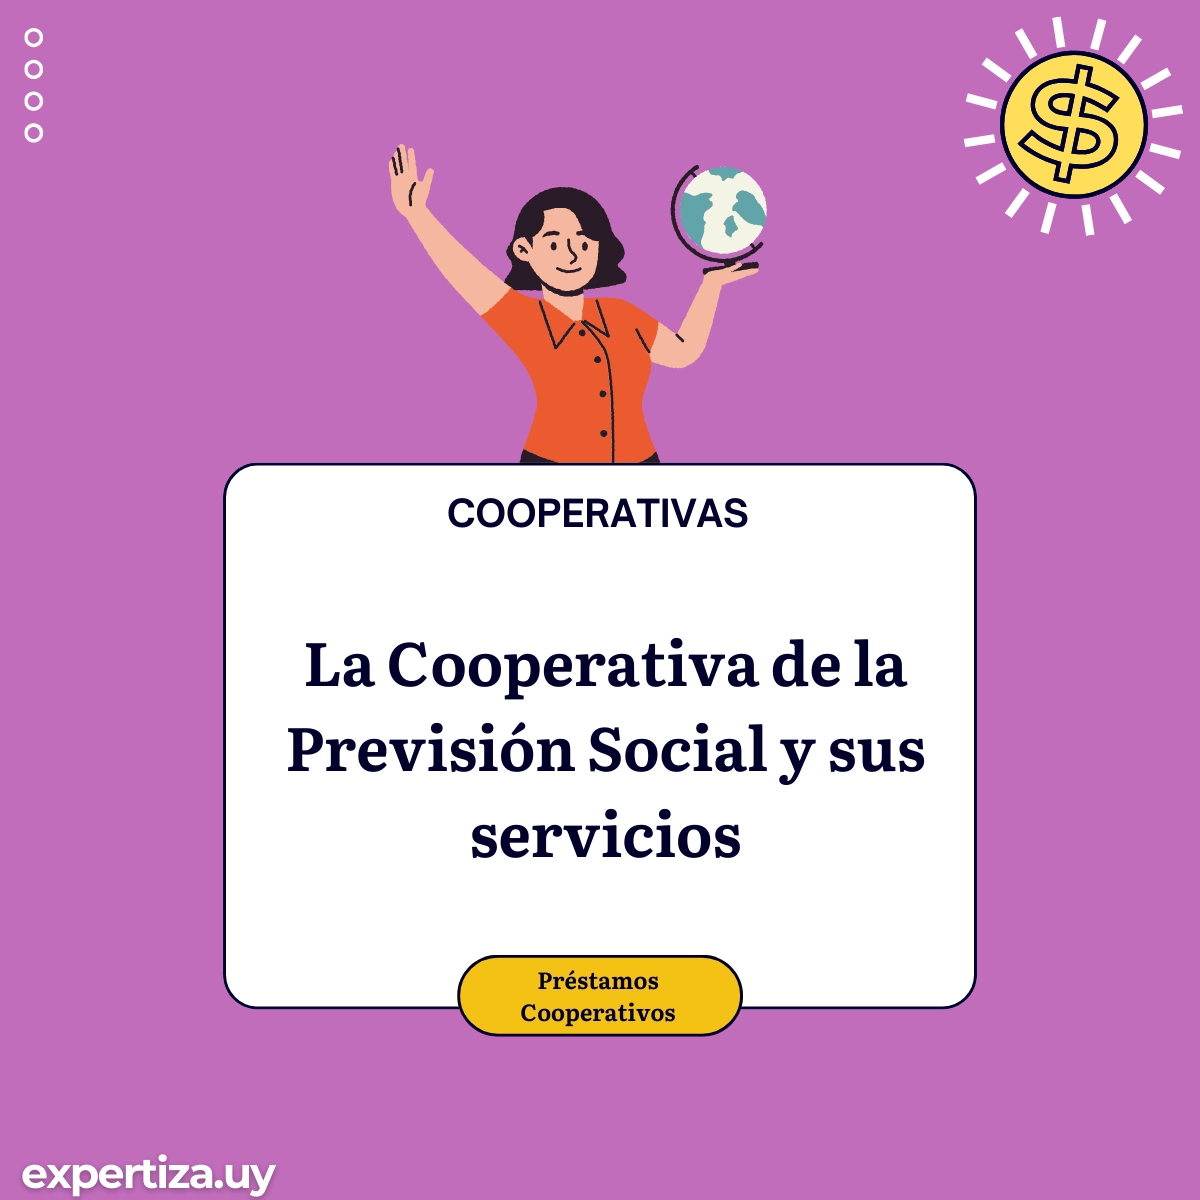 La Cooperativa de la Previsión Social y sus servicios.